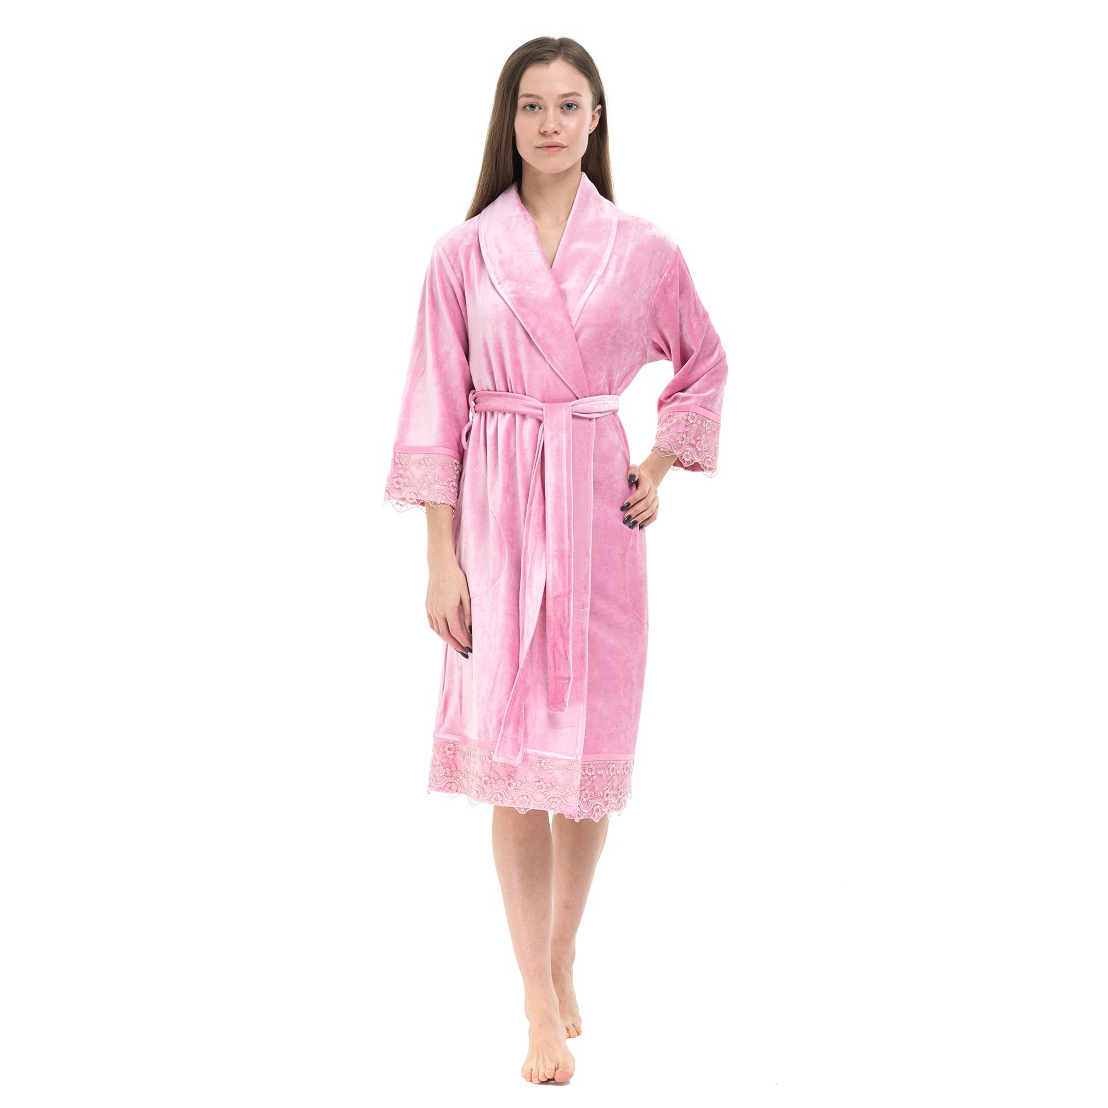 Банный халат Bettina цвет: розовый (2XL)